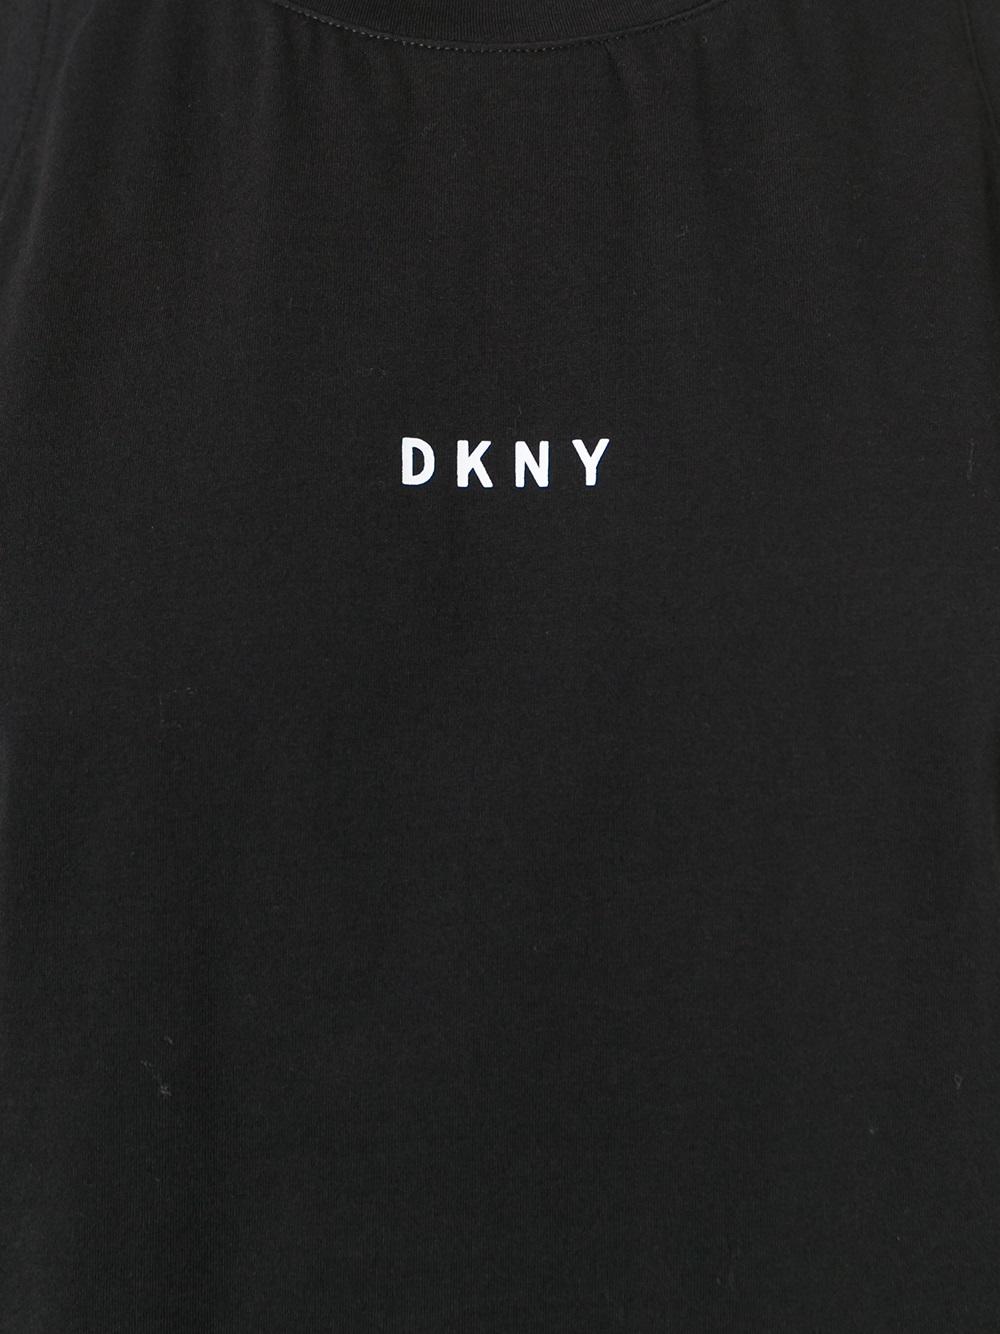 Dkny Logos